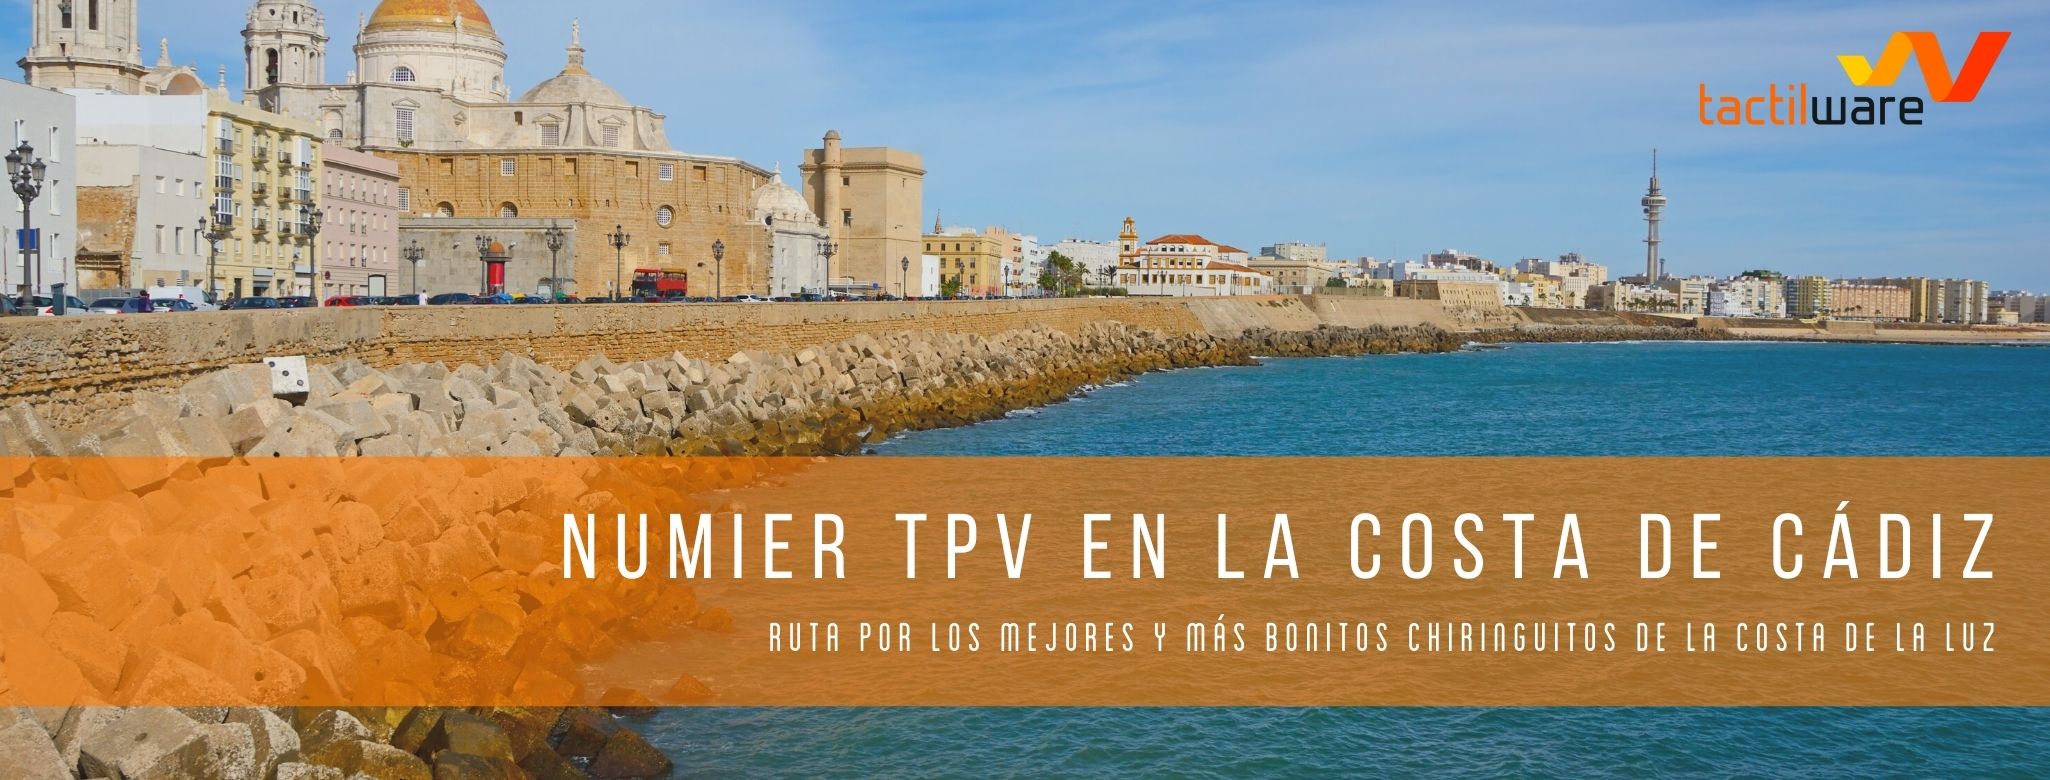 Numier TPV en la Costa de Cádiz: Ruta por los mejores y más bonitos chiringuitos de la costa de la luz